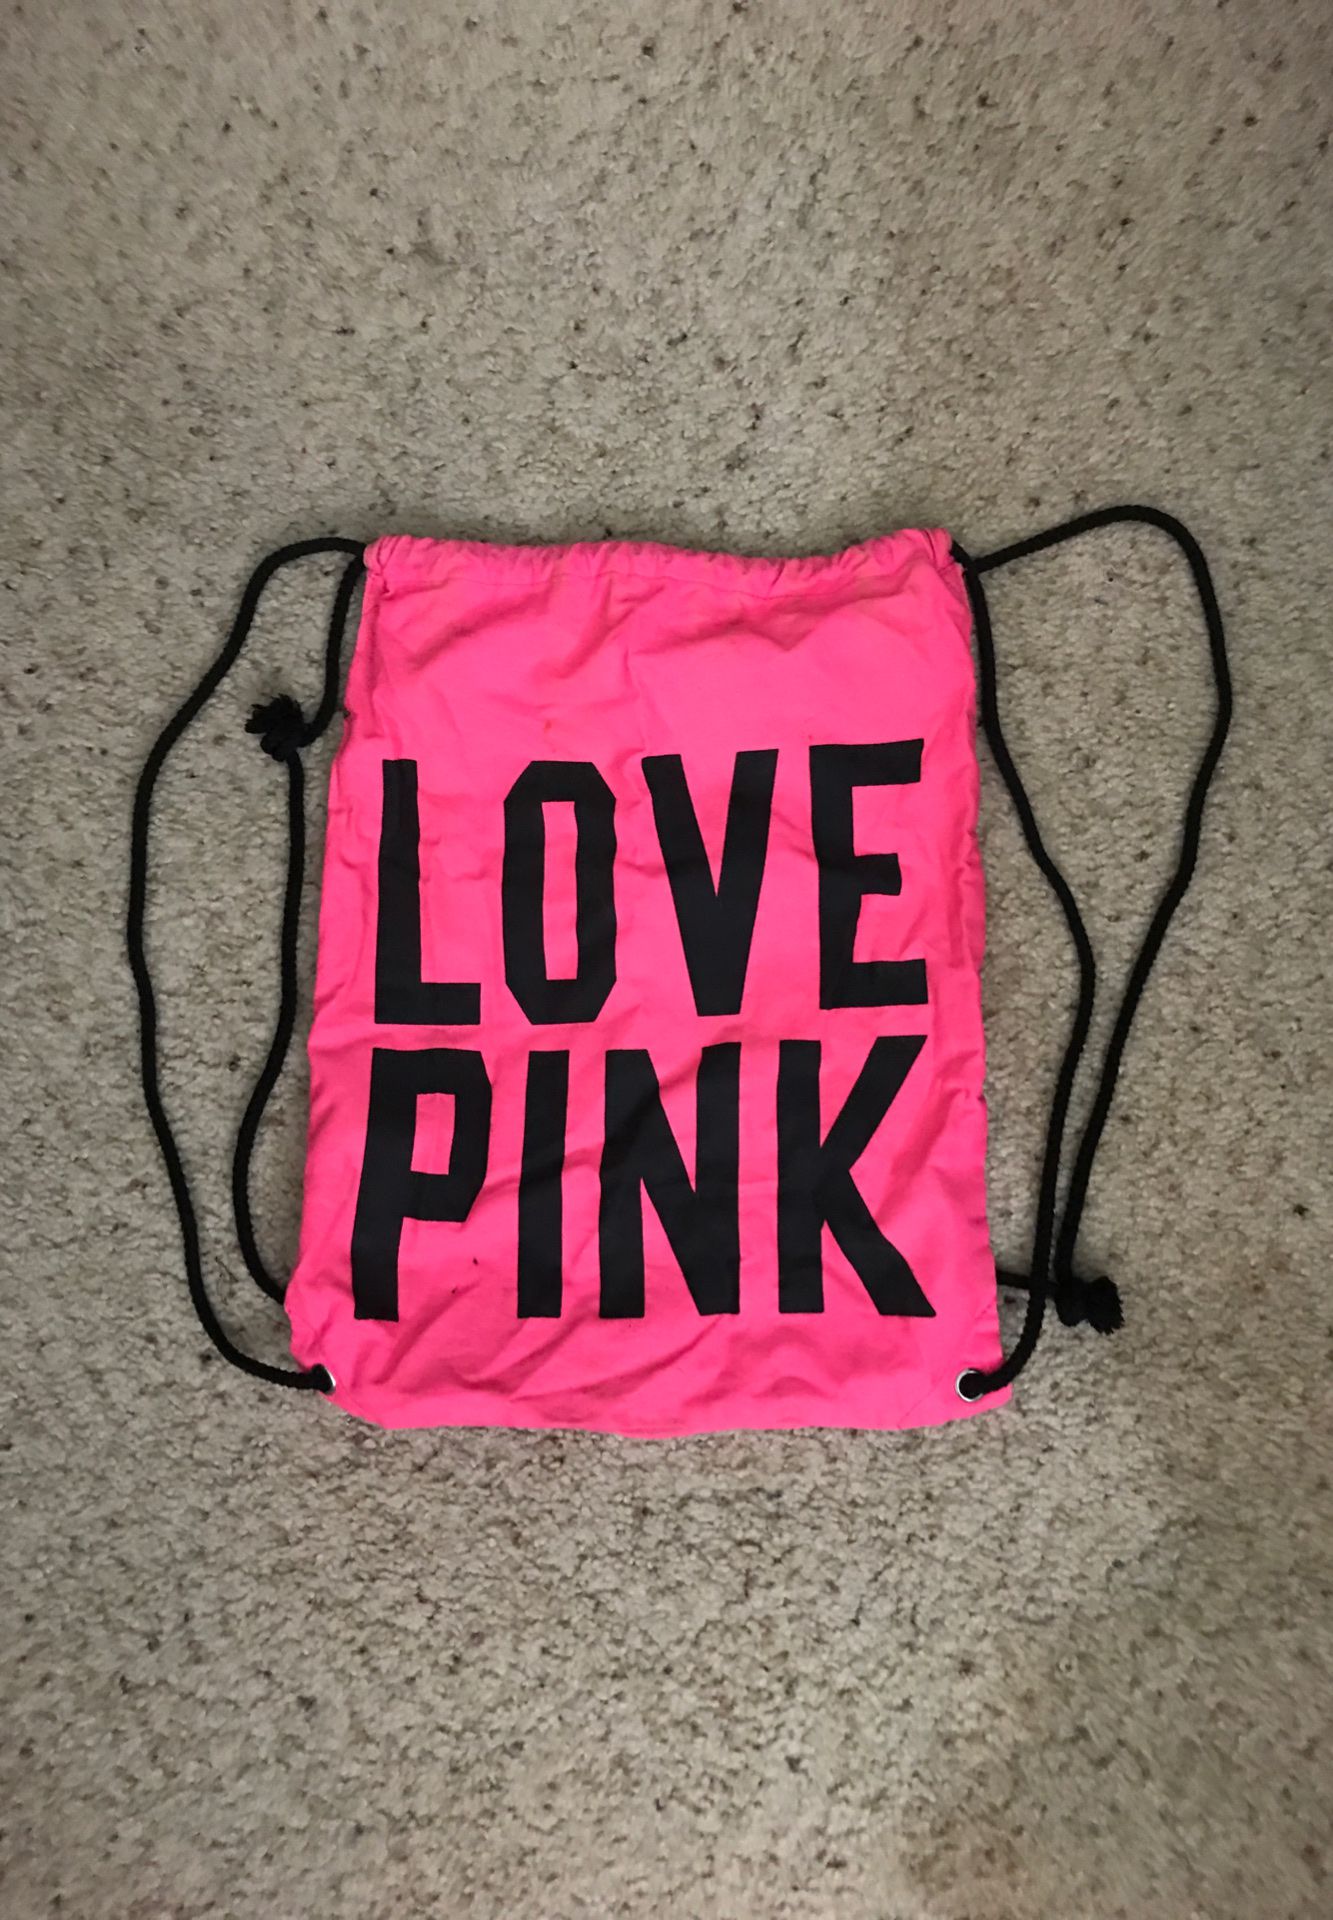 Victoria’s Secret Pink drawstring backpack